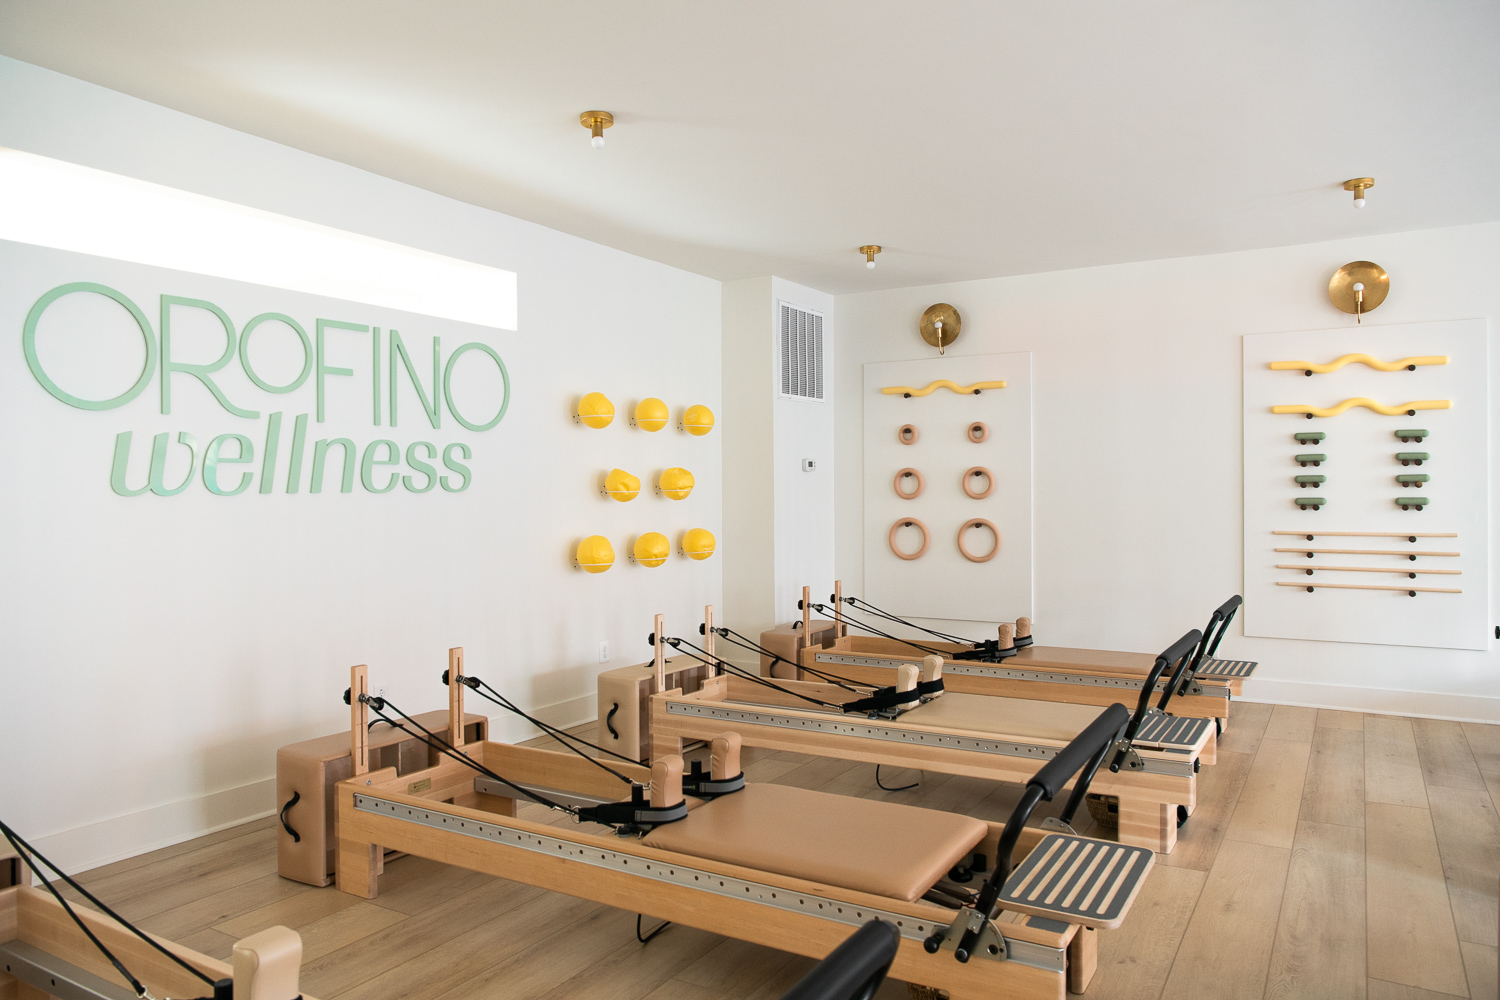 pilates reformer machines at Orofino Wellness